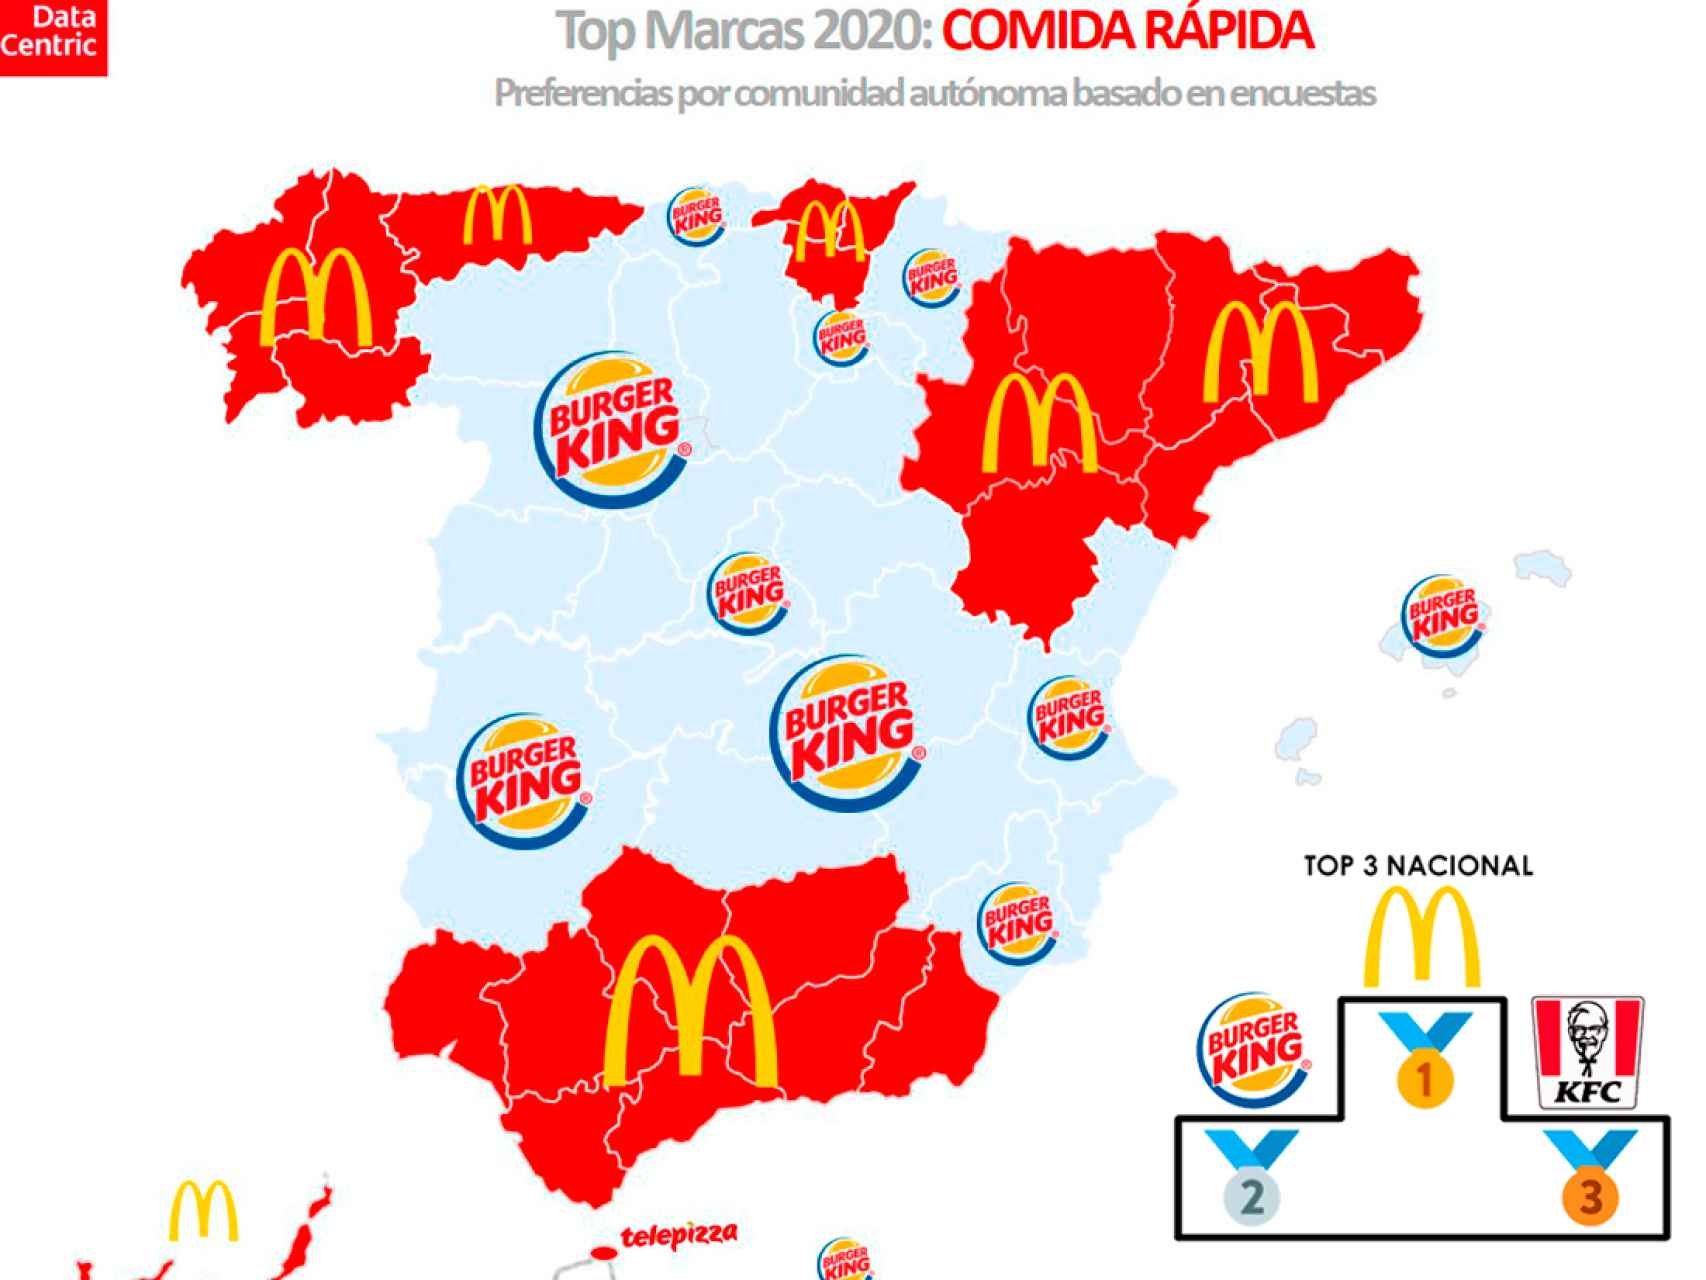 El mapa de las marcas favoritas de comida rápida en España en 2020.